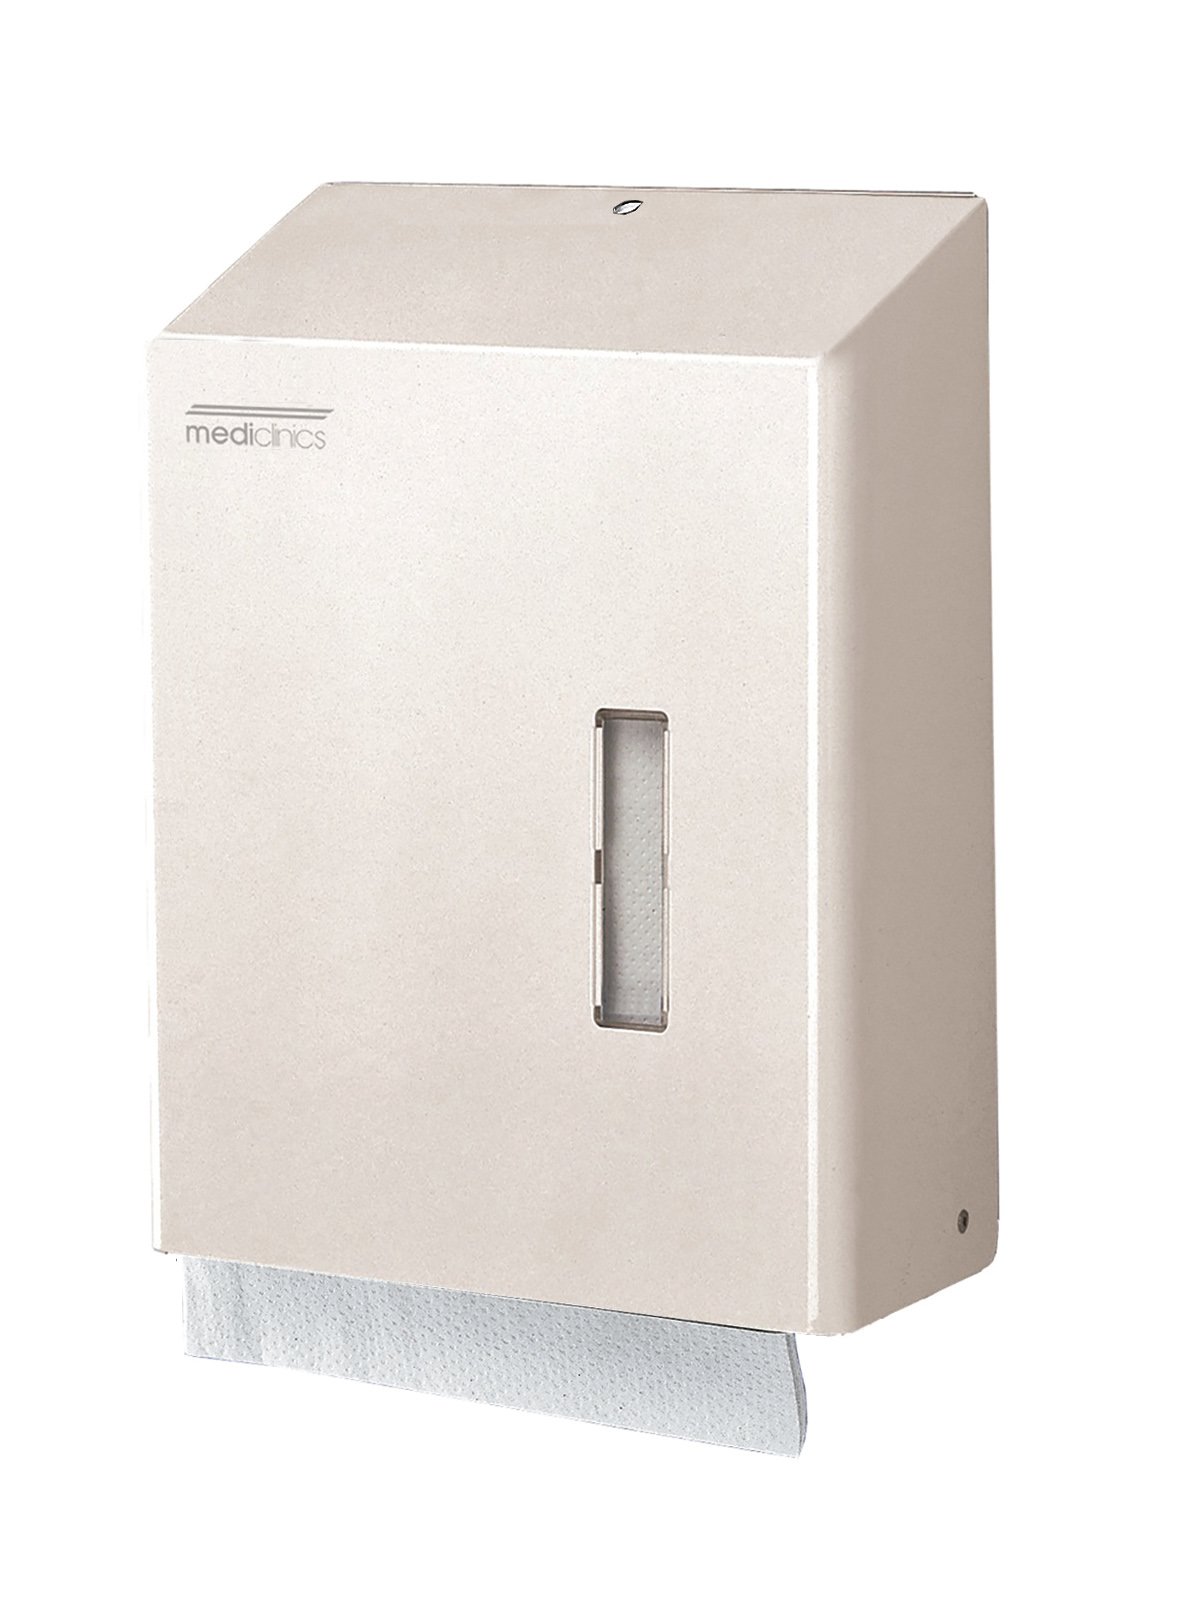 Dispensador de papel toalla C/Z. Acero inox. epoxi blanco